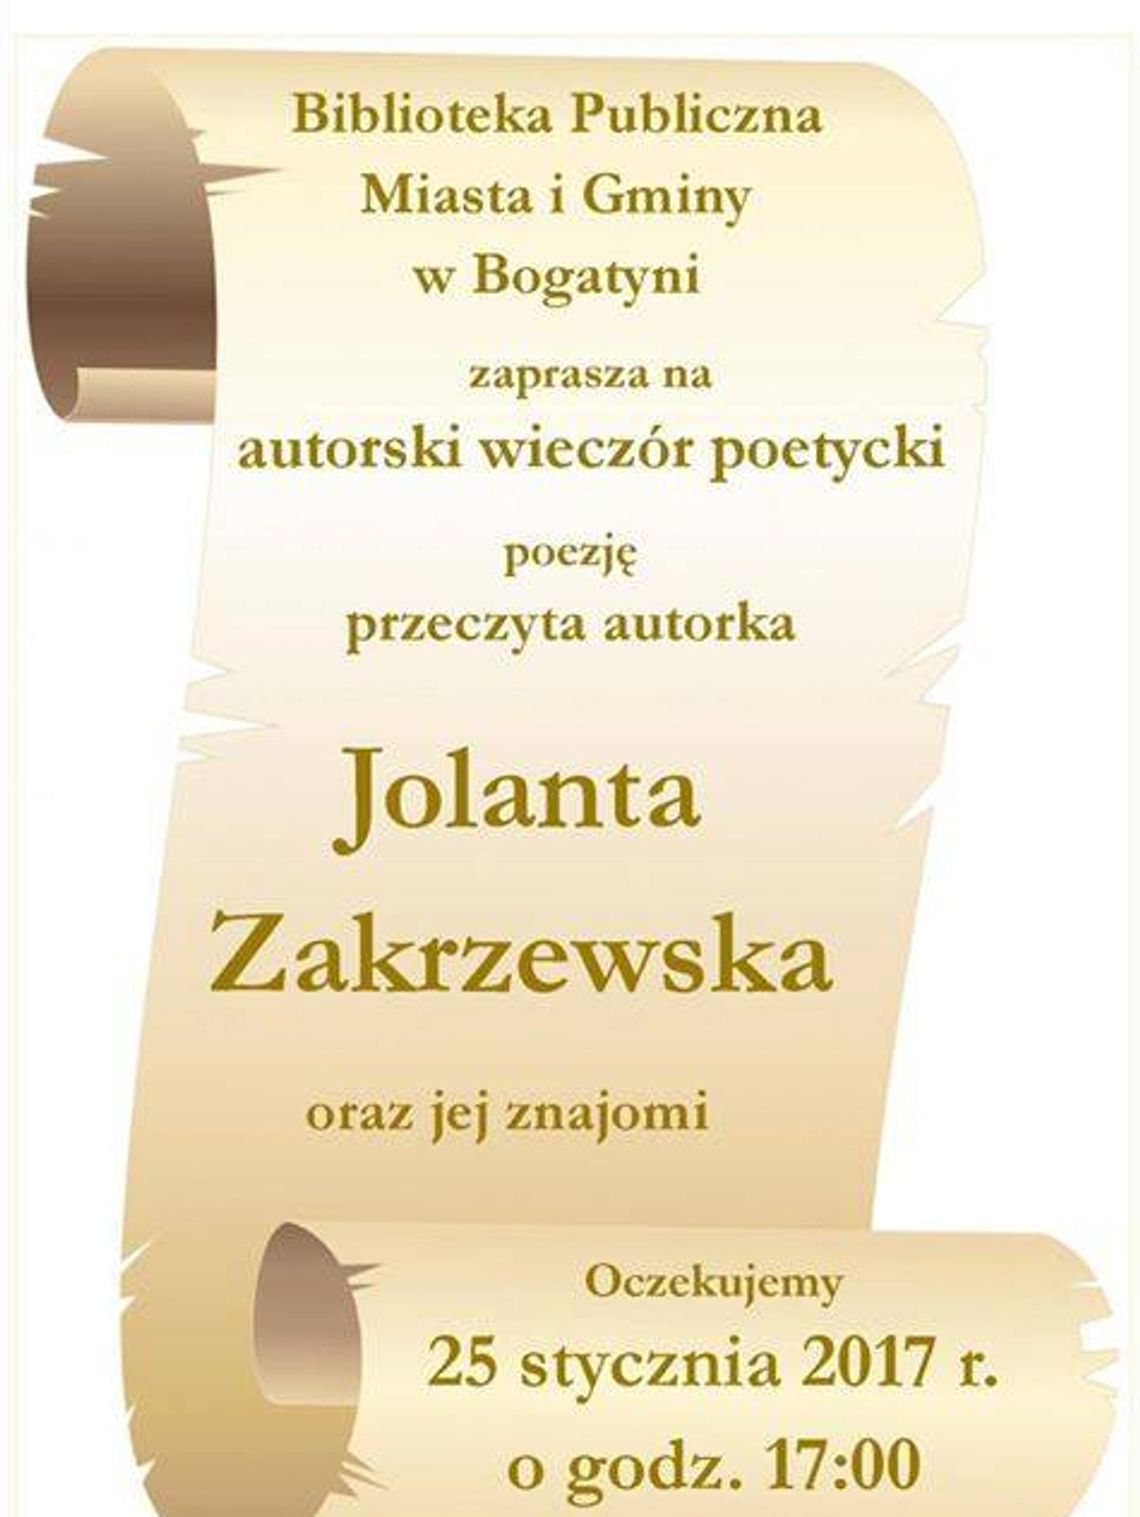 Autorski wieczór poetycki Jolanty Zakrzewskiej